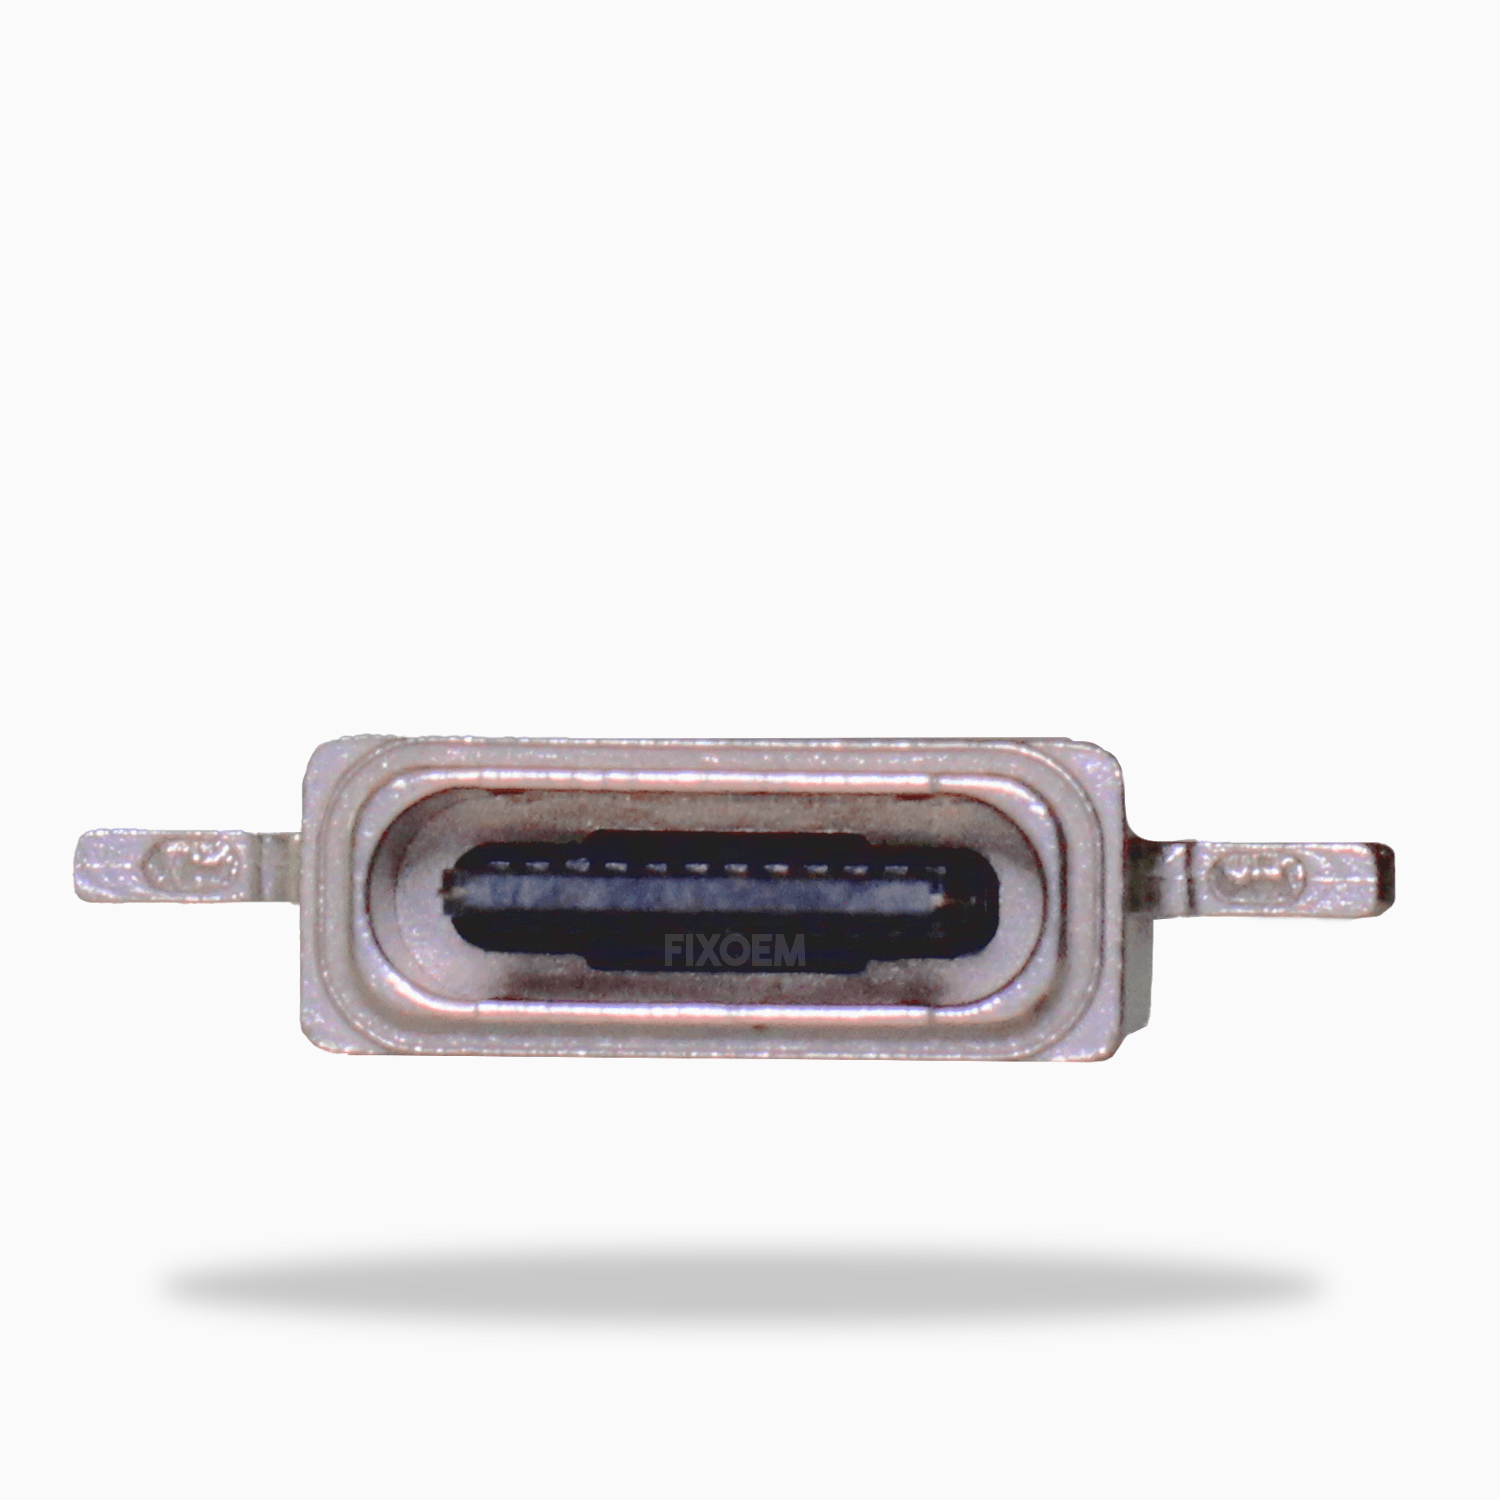 Pin Carga Samsung Note 9 N960 a solo $ 40.00 Refaccion y puestos celulares, refurbish y microelectronica.- FixOEM